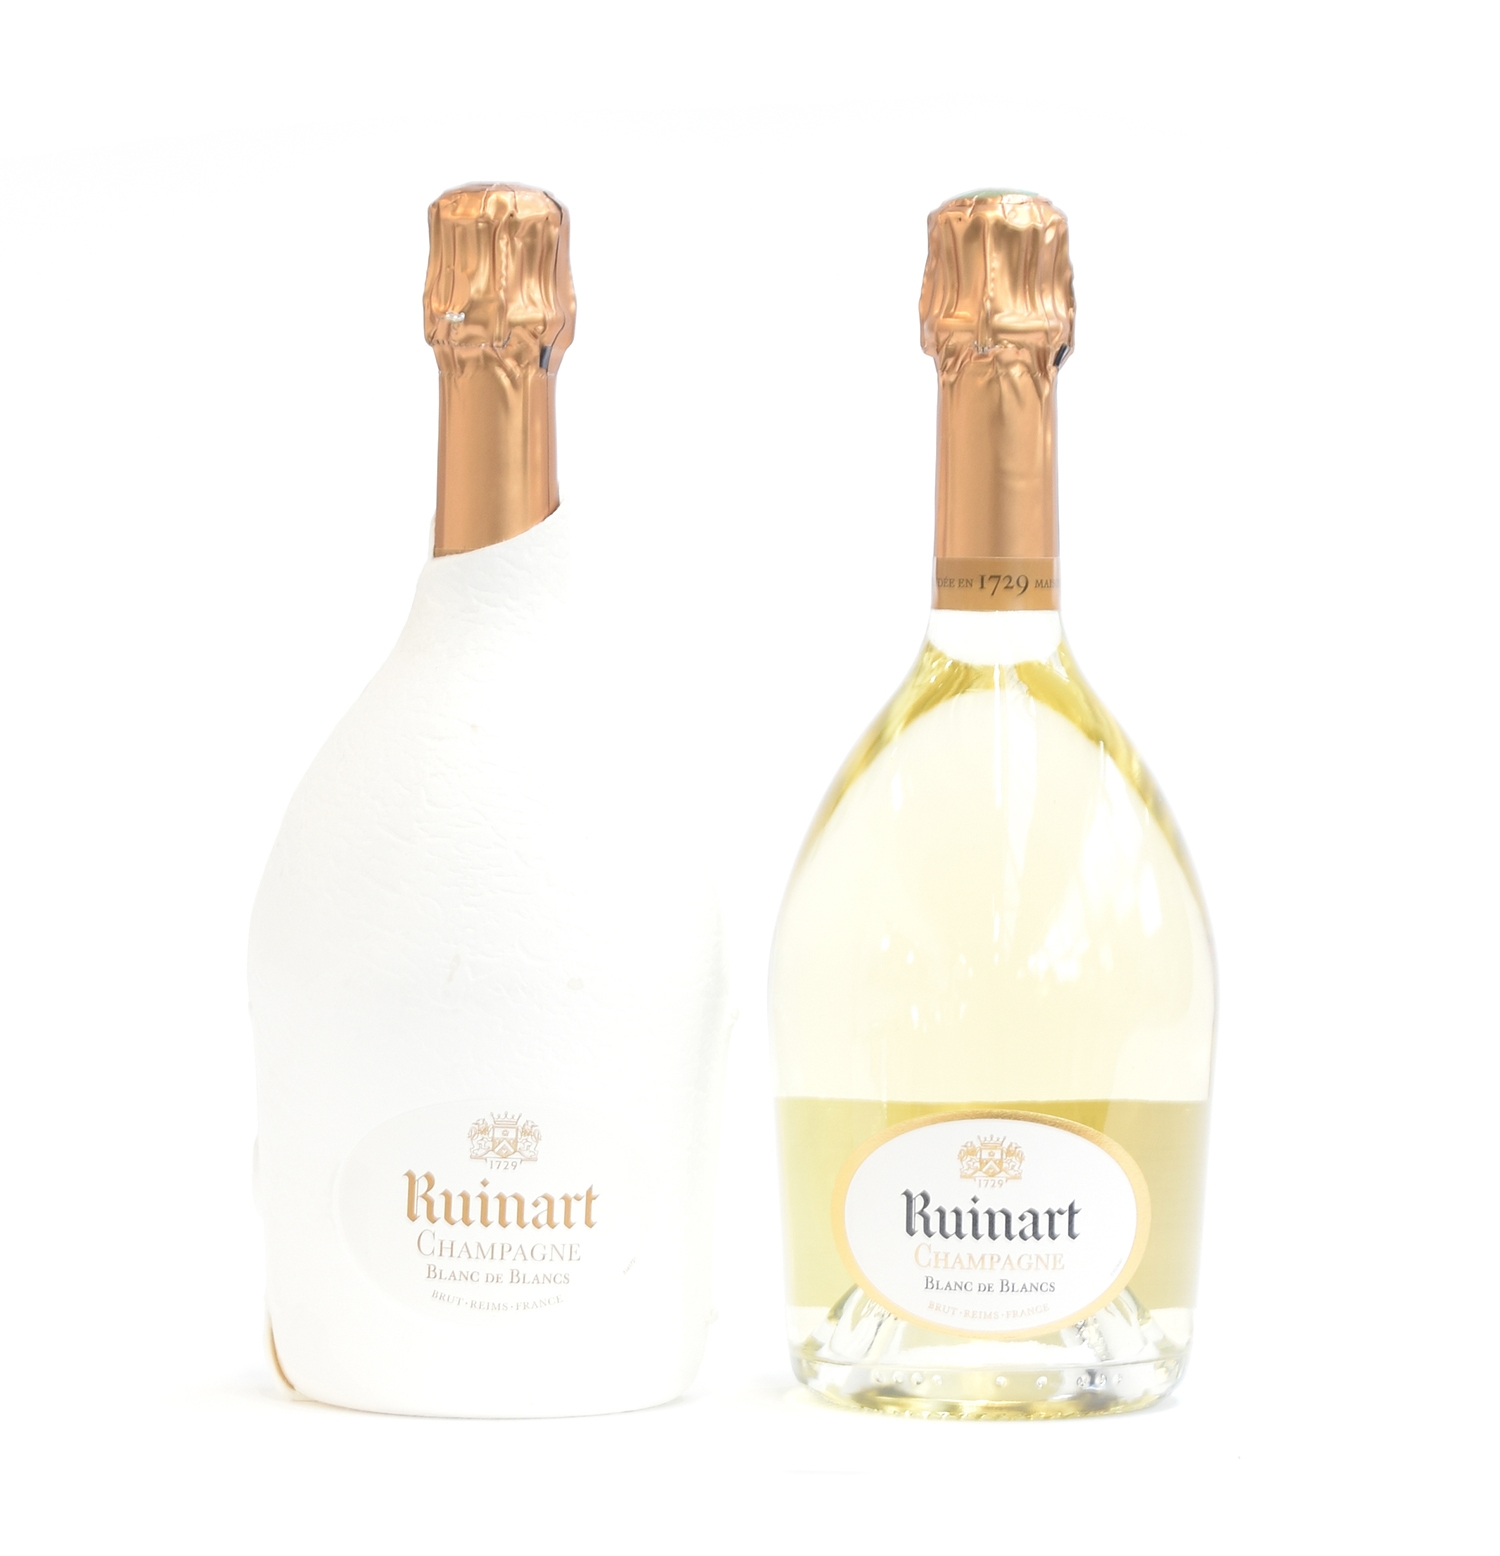 Ruinart Blanc de Blancs, white champagne (12.5%, 75cl), two bottles